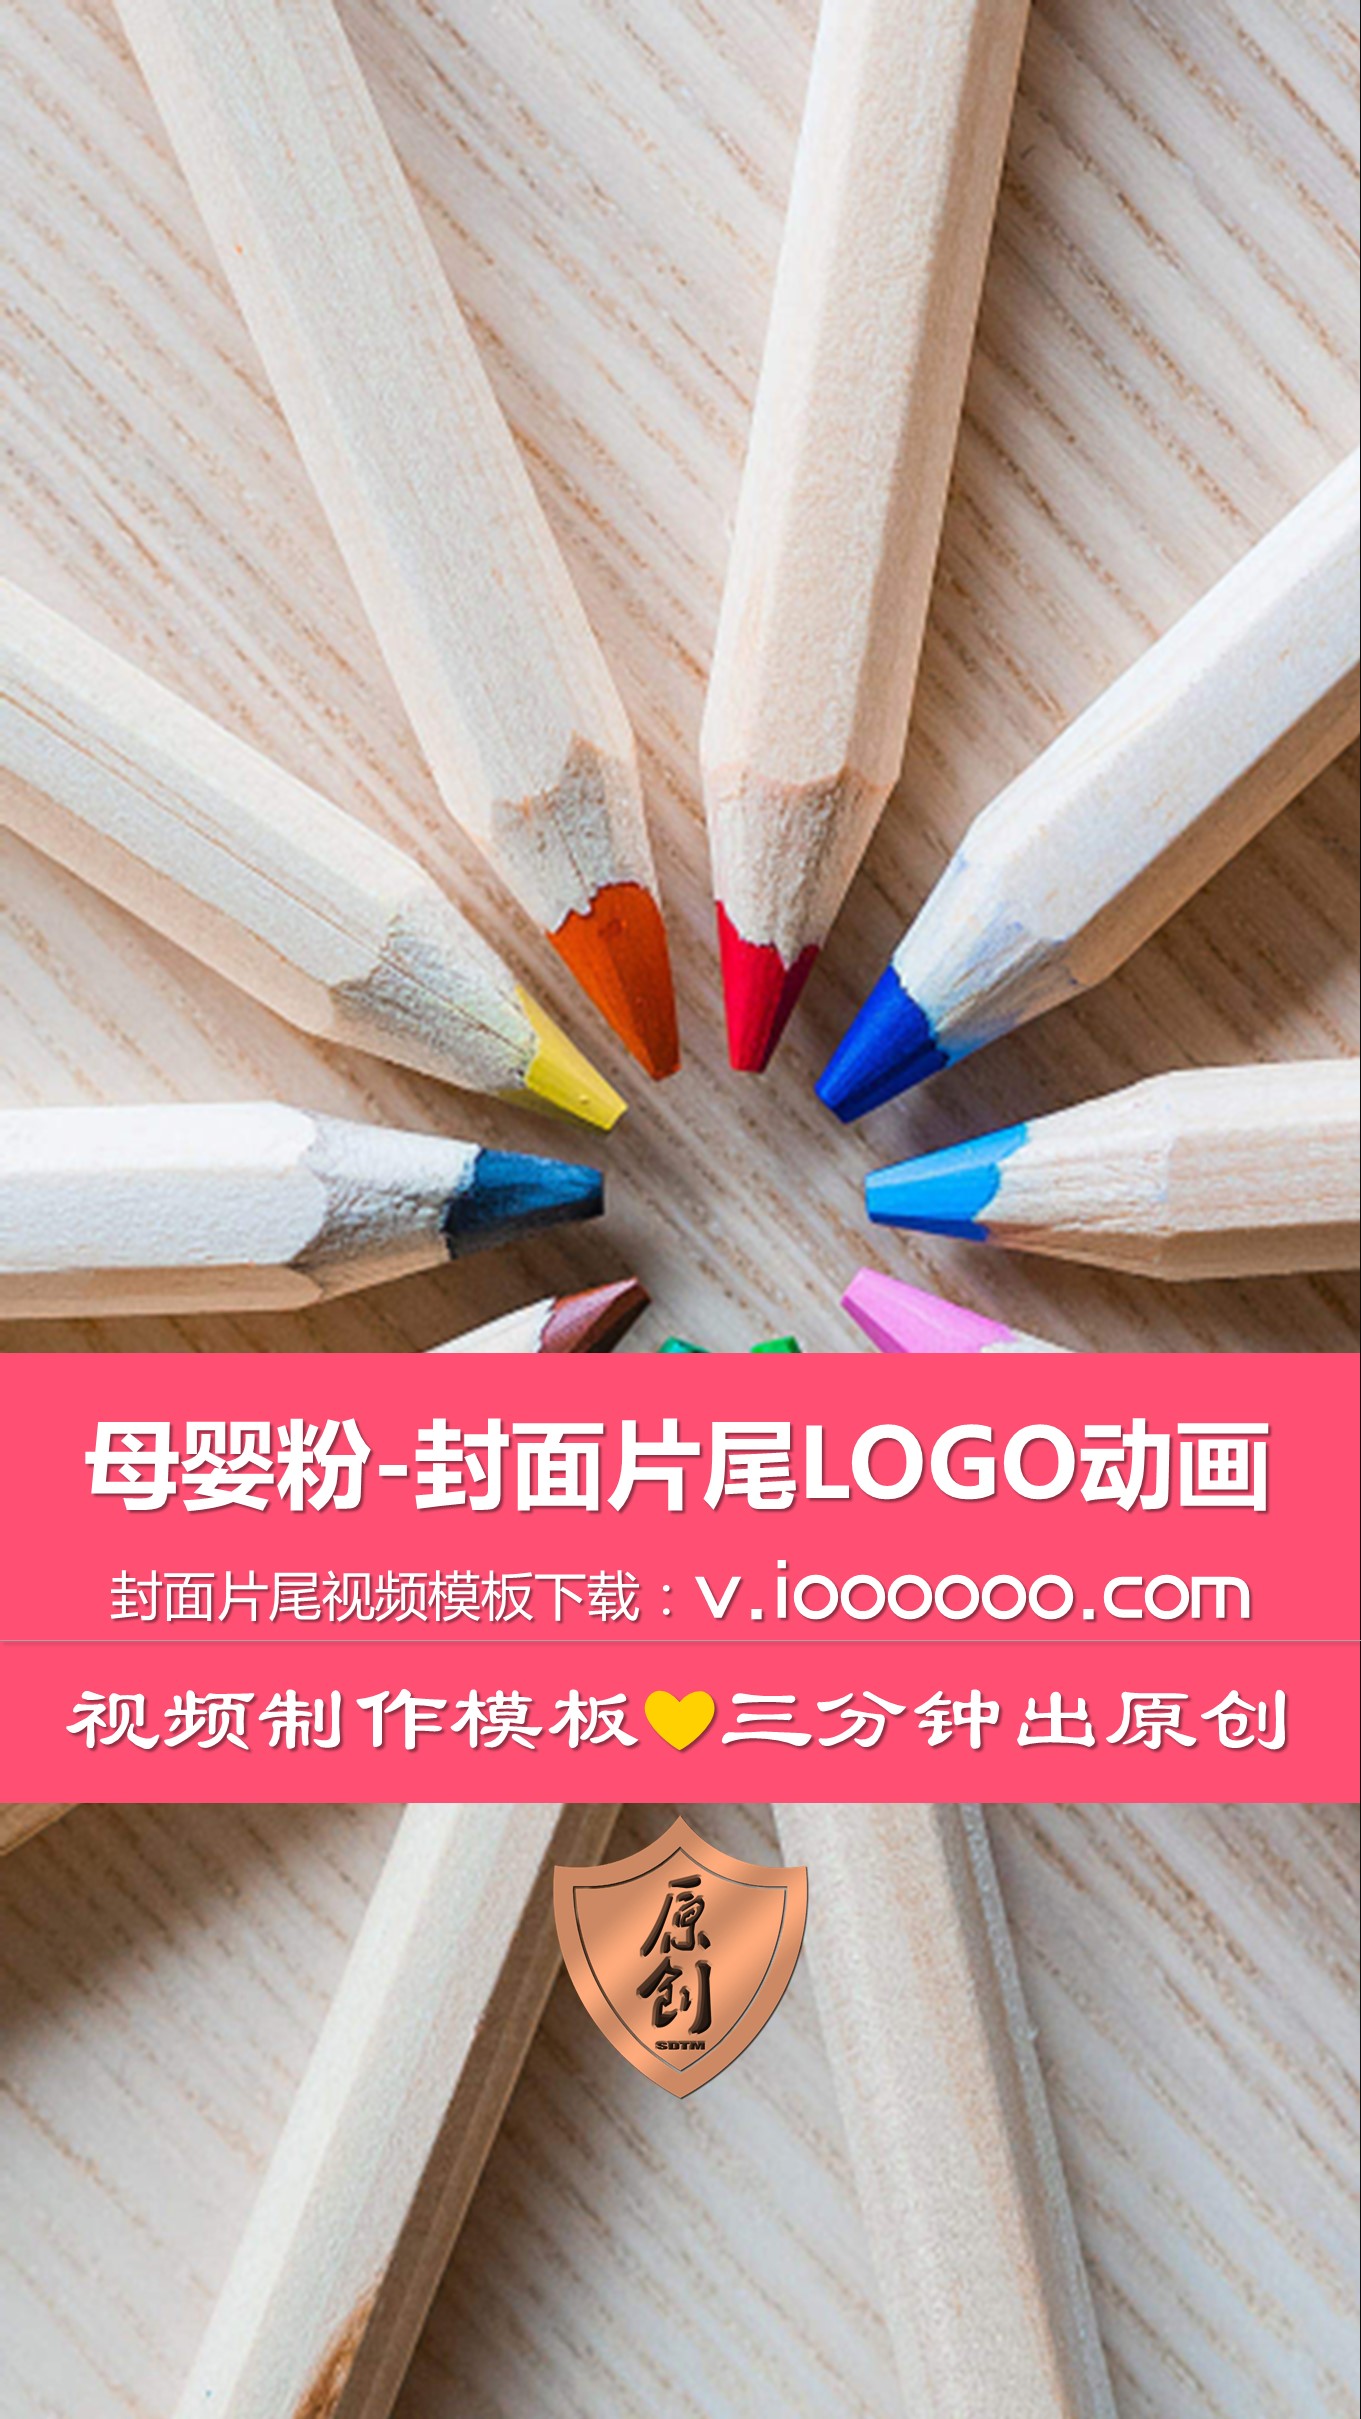 母婴粉片头片尾封面LOGO动画竖版 (1).JPG